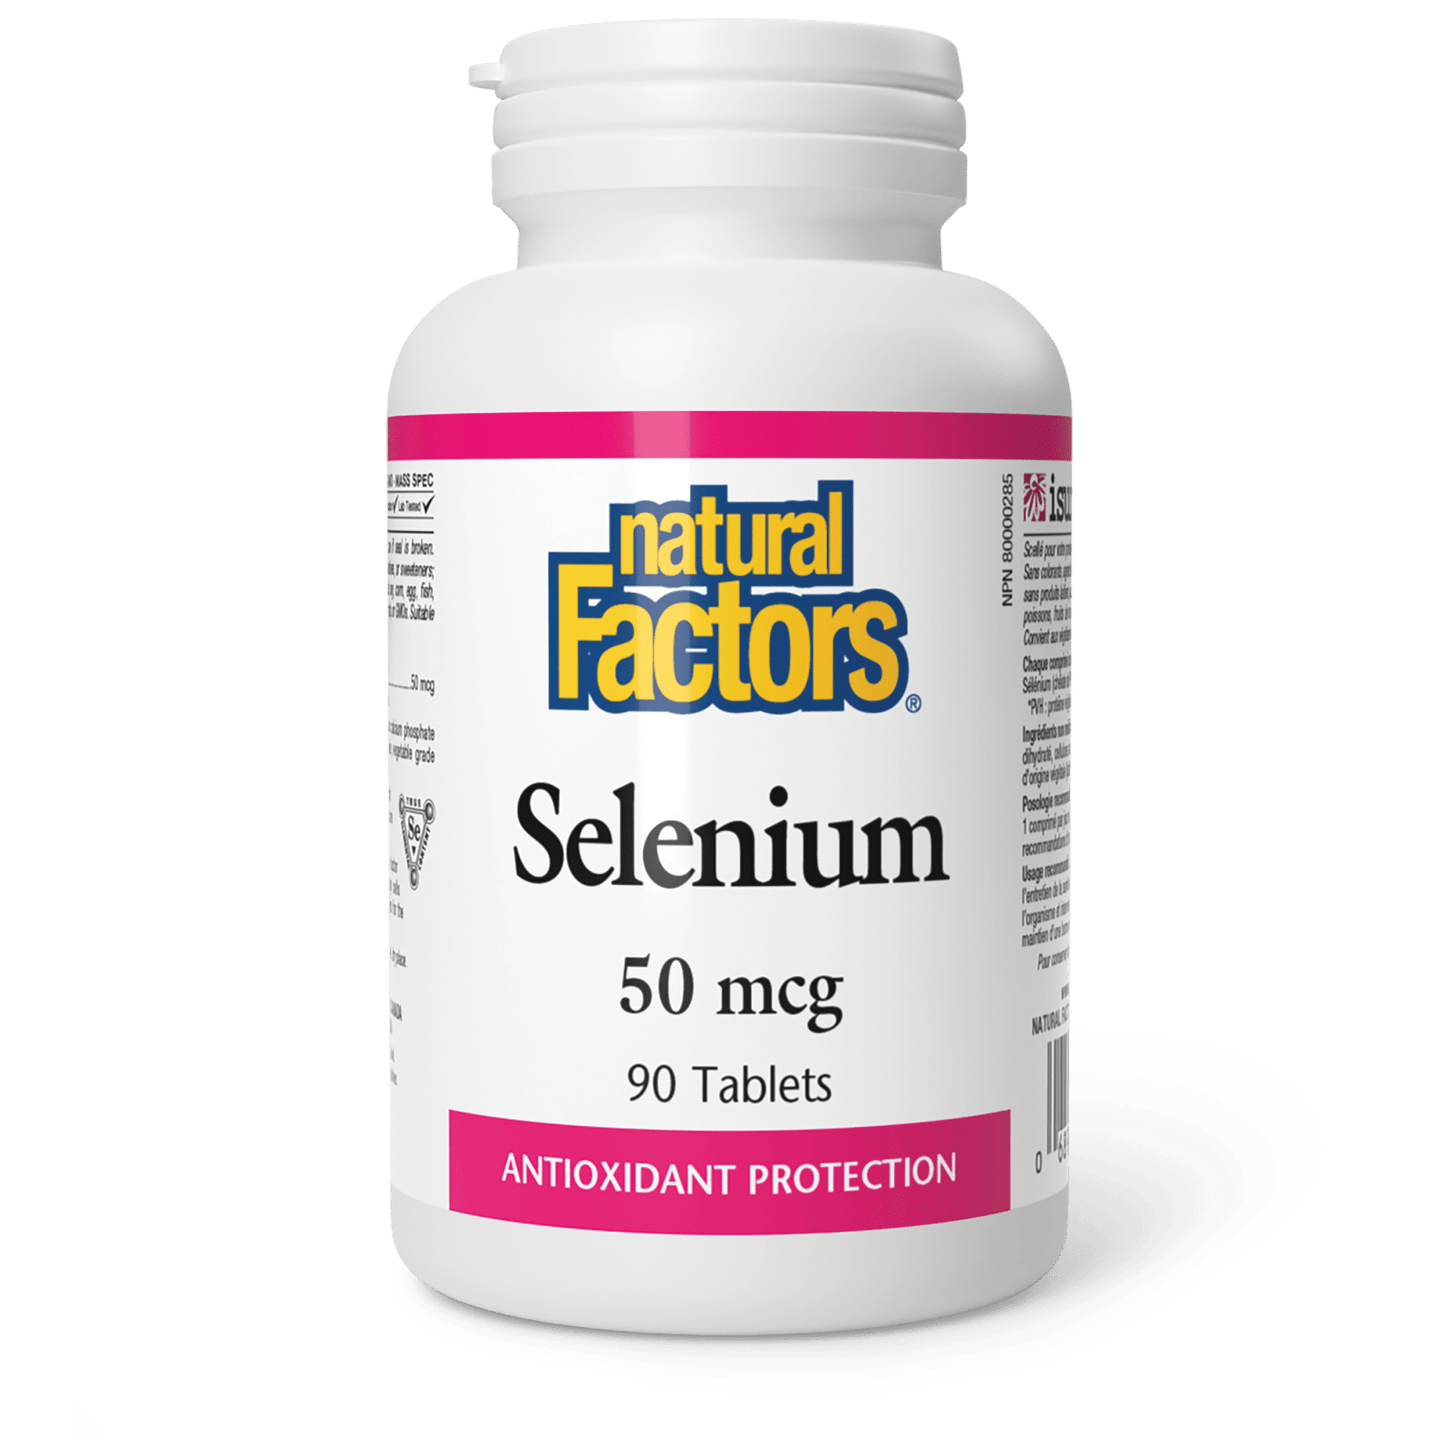 Selenium 50 mcg, Natural Factors|v|image|1668